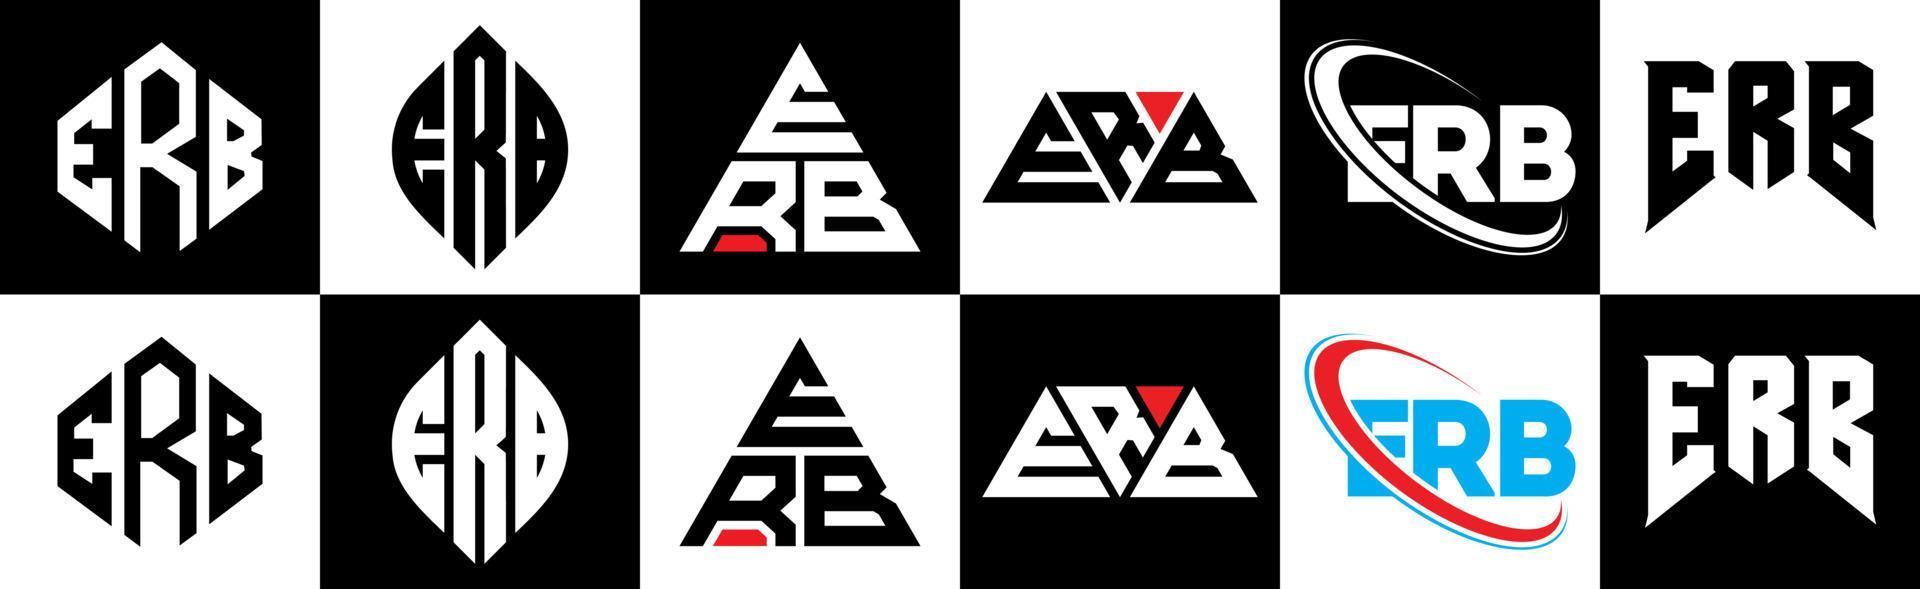 création de logo de lettre erb en six styles. polygone erb, cercle, triangle, hexagone, style plat et simple avec logo de lettre de variation de couleur noir et blanc dans un plan de travail. logo minimaliste et classique erb vecteur